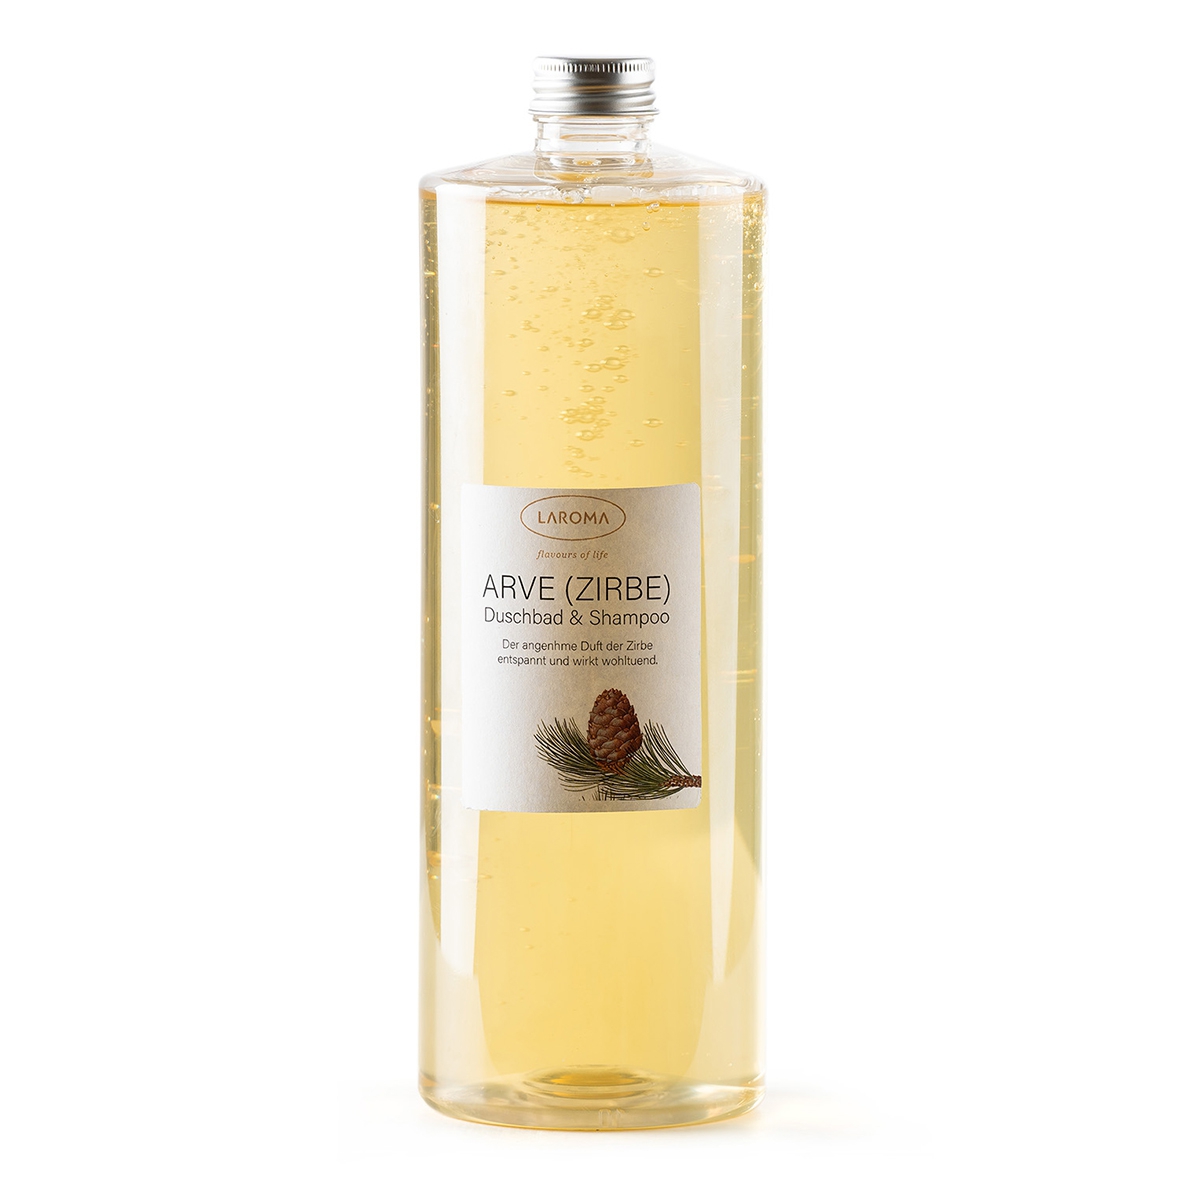 Arve Dusch Shampoo 1 Liter Transparente Flasche